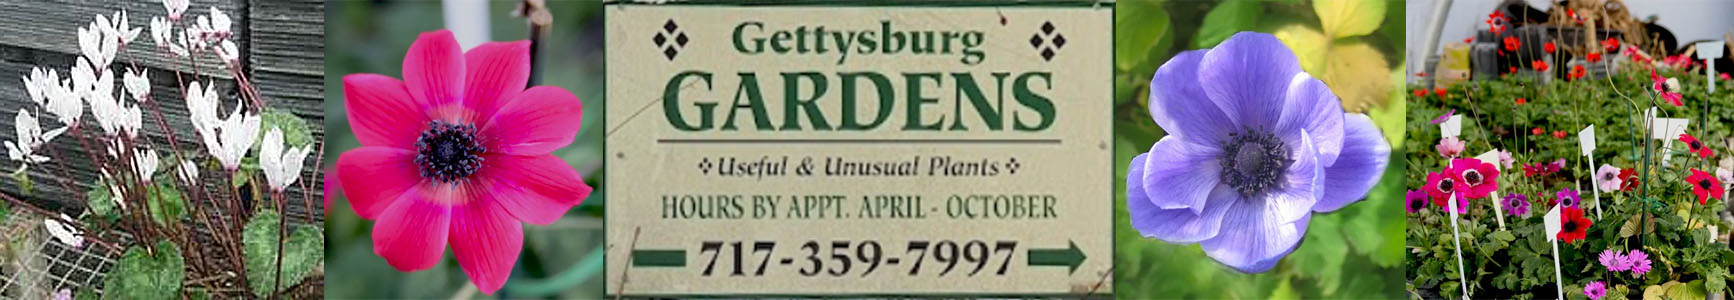 Gettysburg Gardens